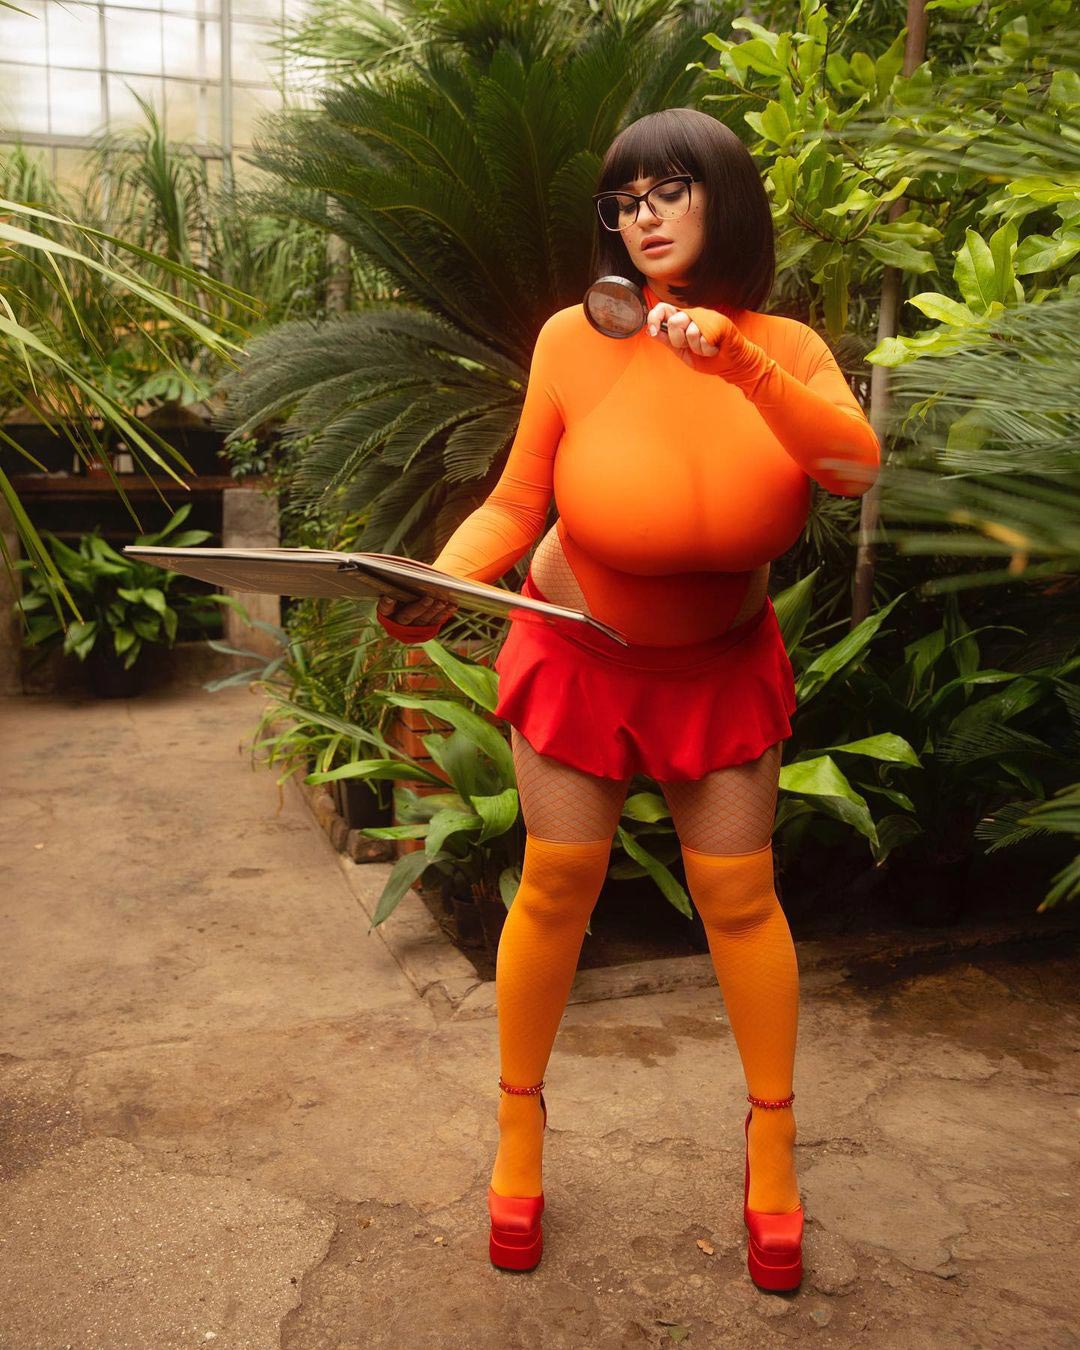 1080px x 1350px - Demmy Blaze as Velma from Scooby-Doo â€“ The Boobs Blog